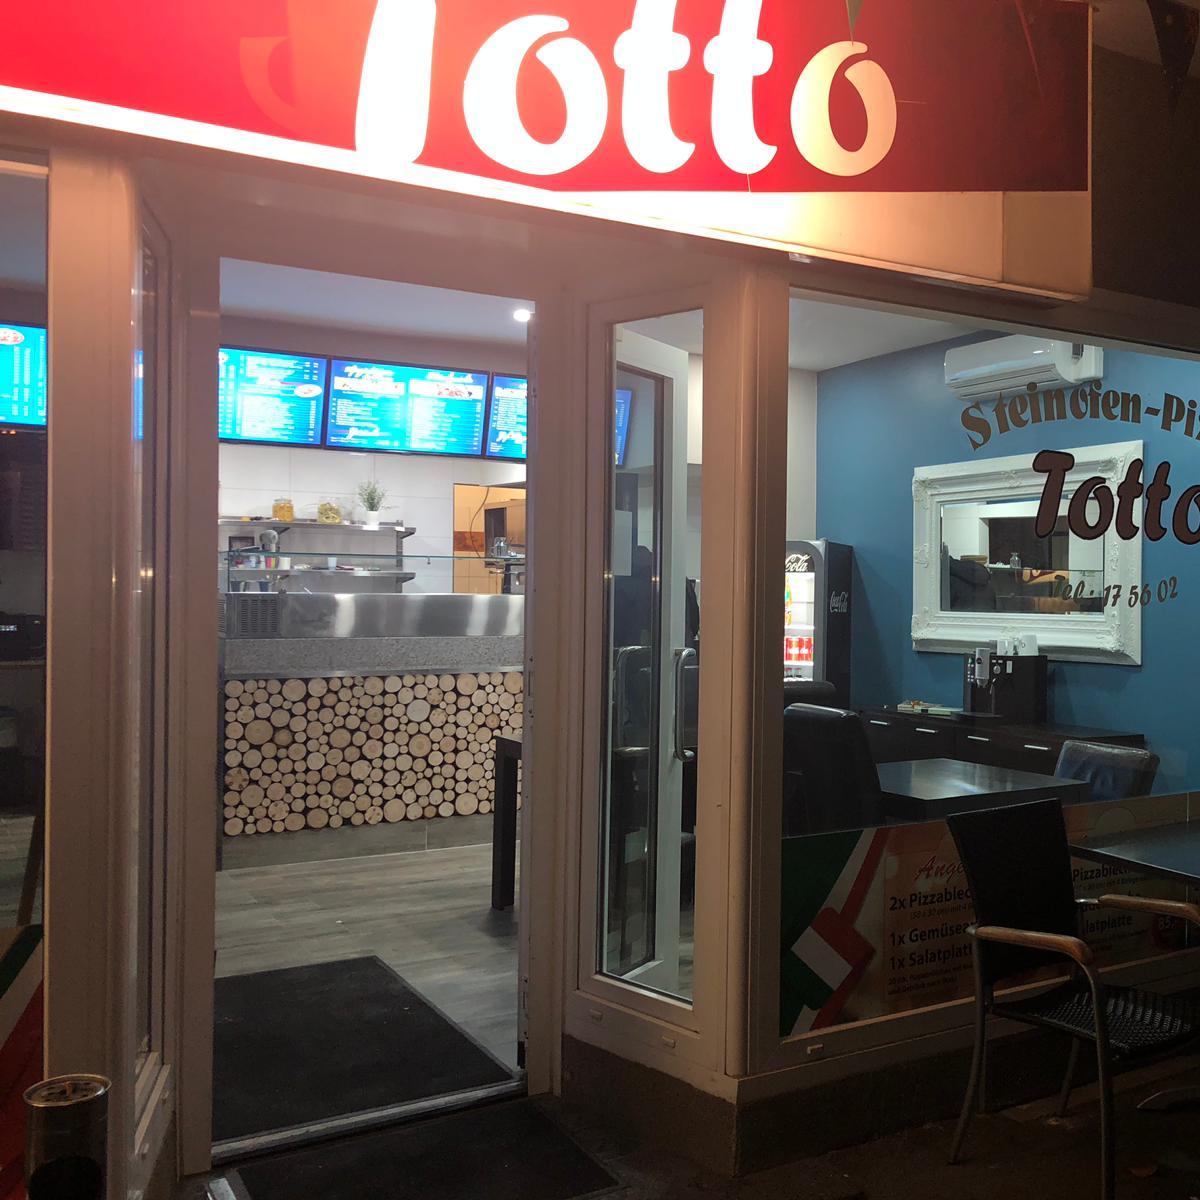 Restaurant "Pizzeria Totto" in Dortmund